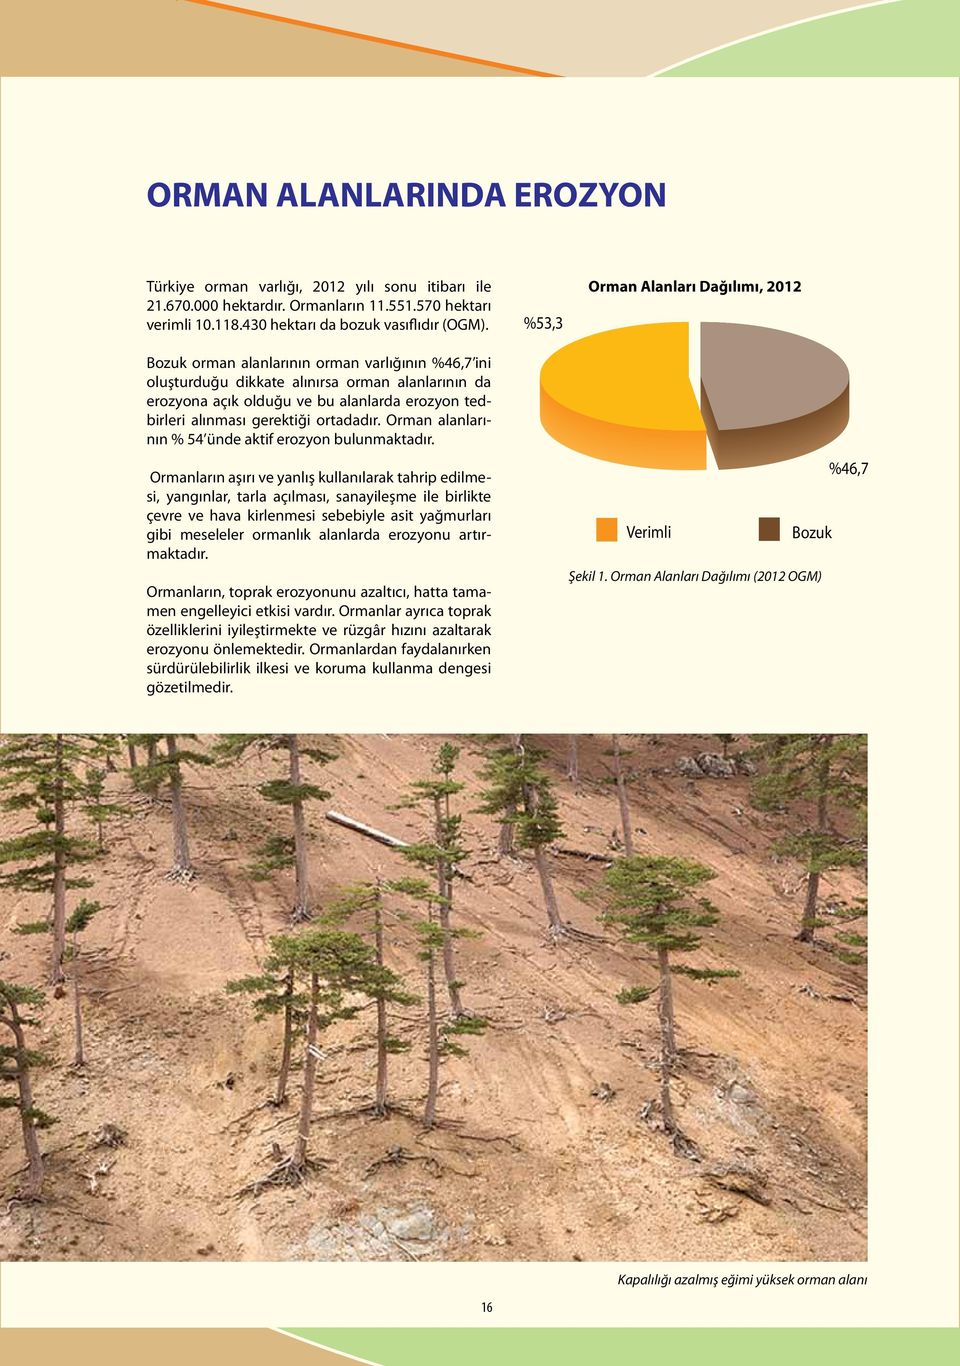 Bozuk orman alanlarının orman varlığının %46,7 ini oluşturduğu dikkate alınırsa orman alanlarının da erozyona açık olduğu ve bu alanlarda erozyon tedbirleri alınması gerektiği ortadadır.